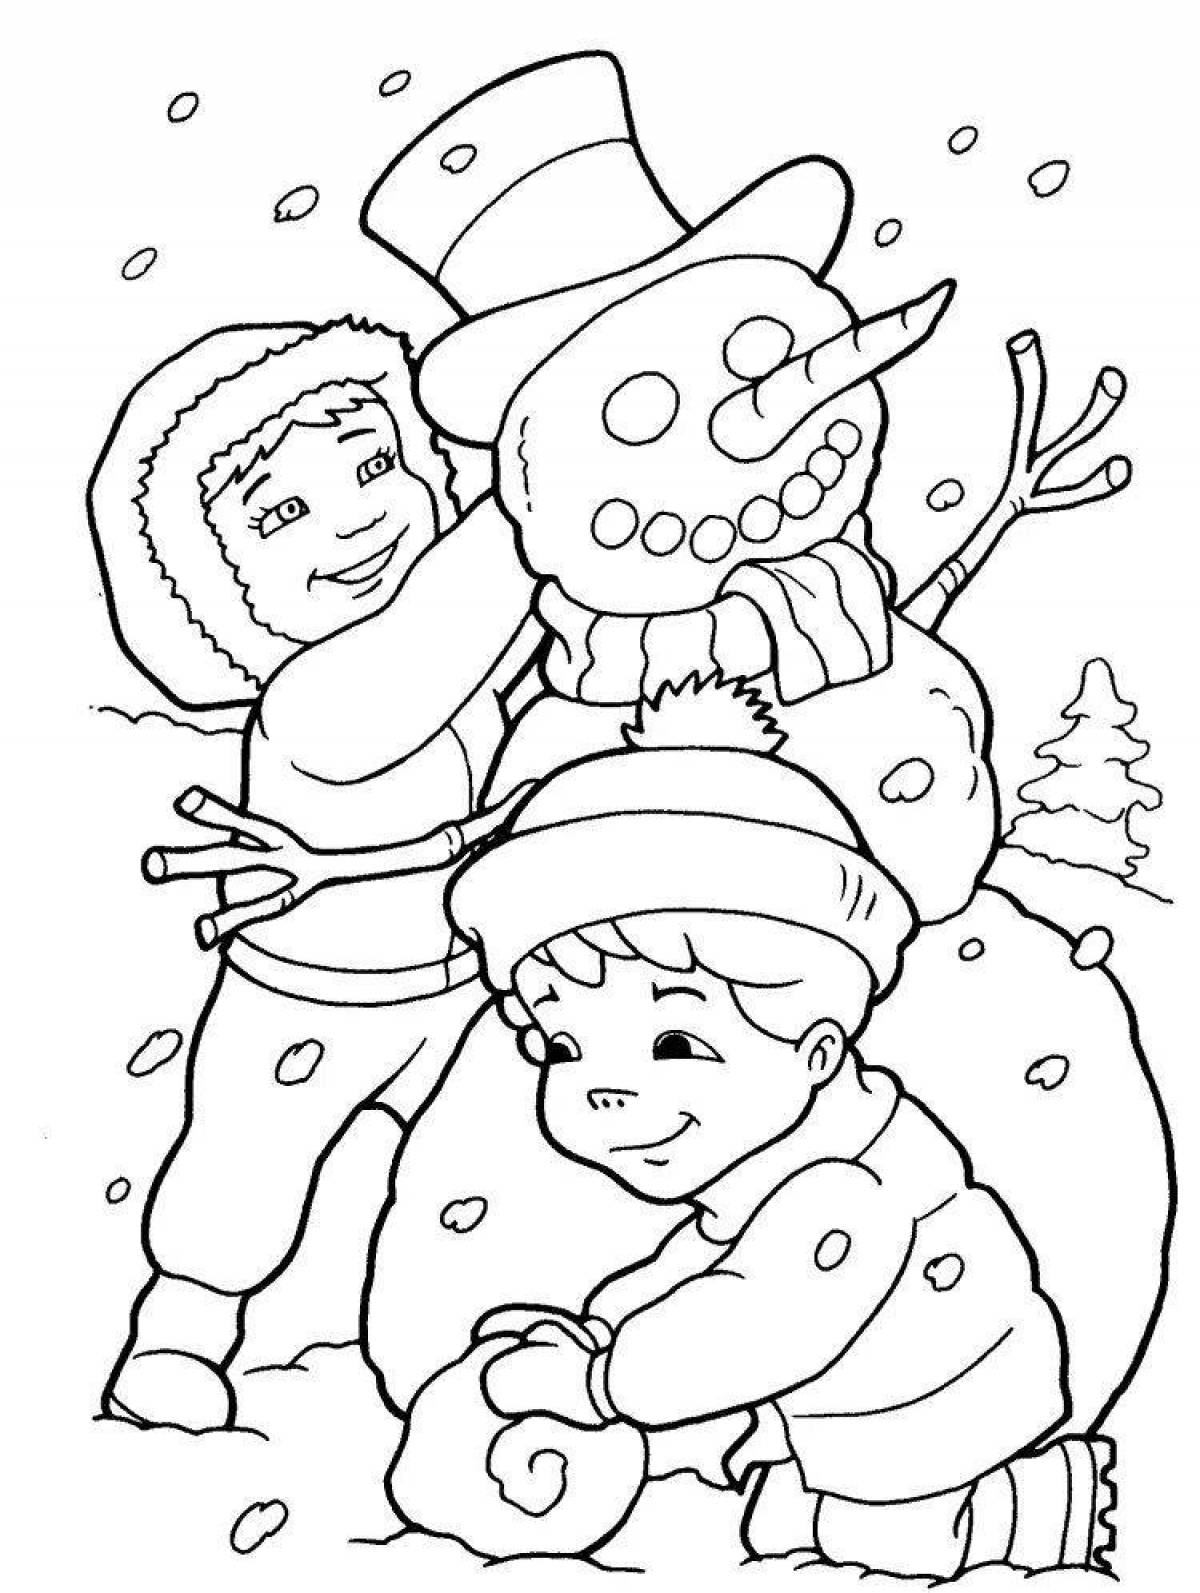 Joyful children's winter coloring book